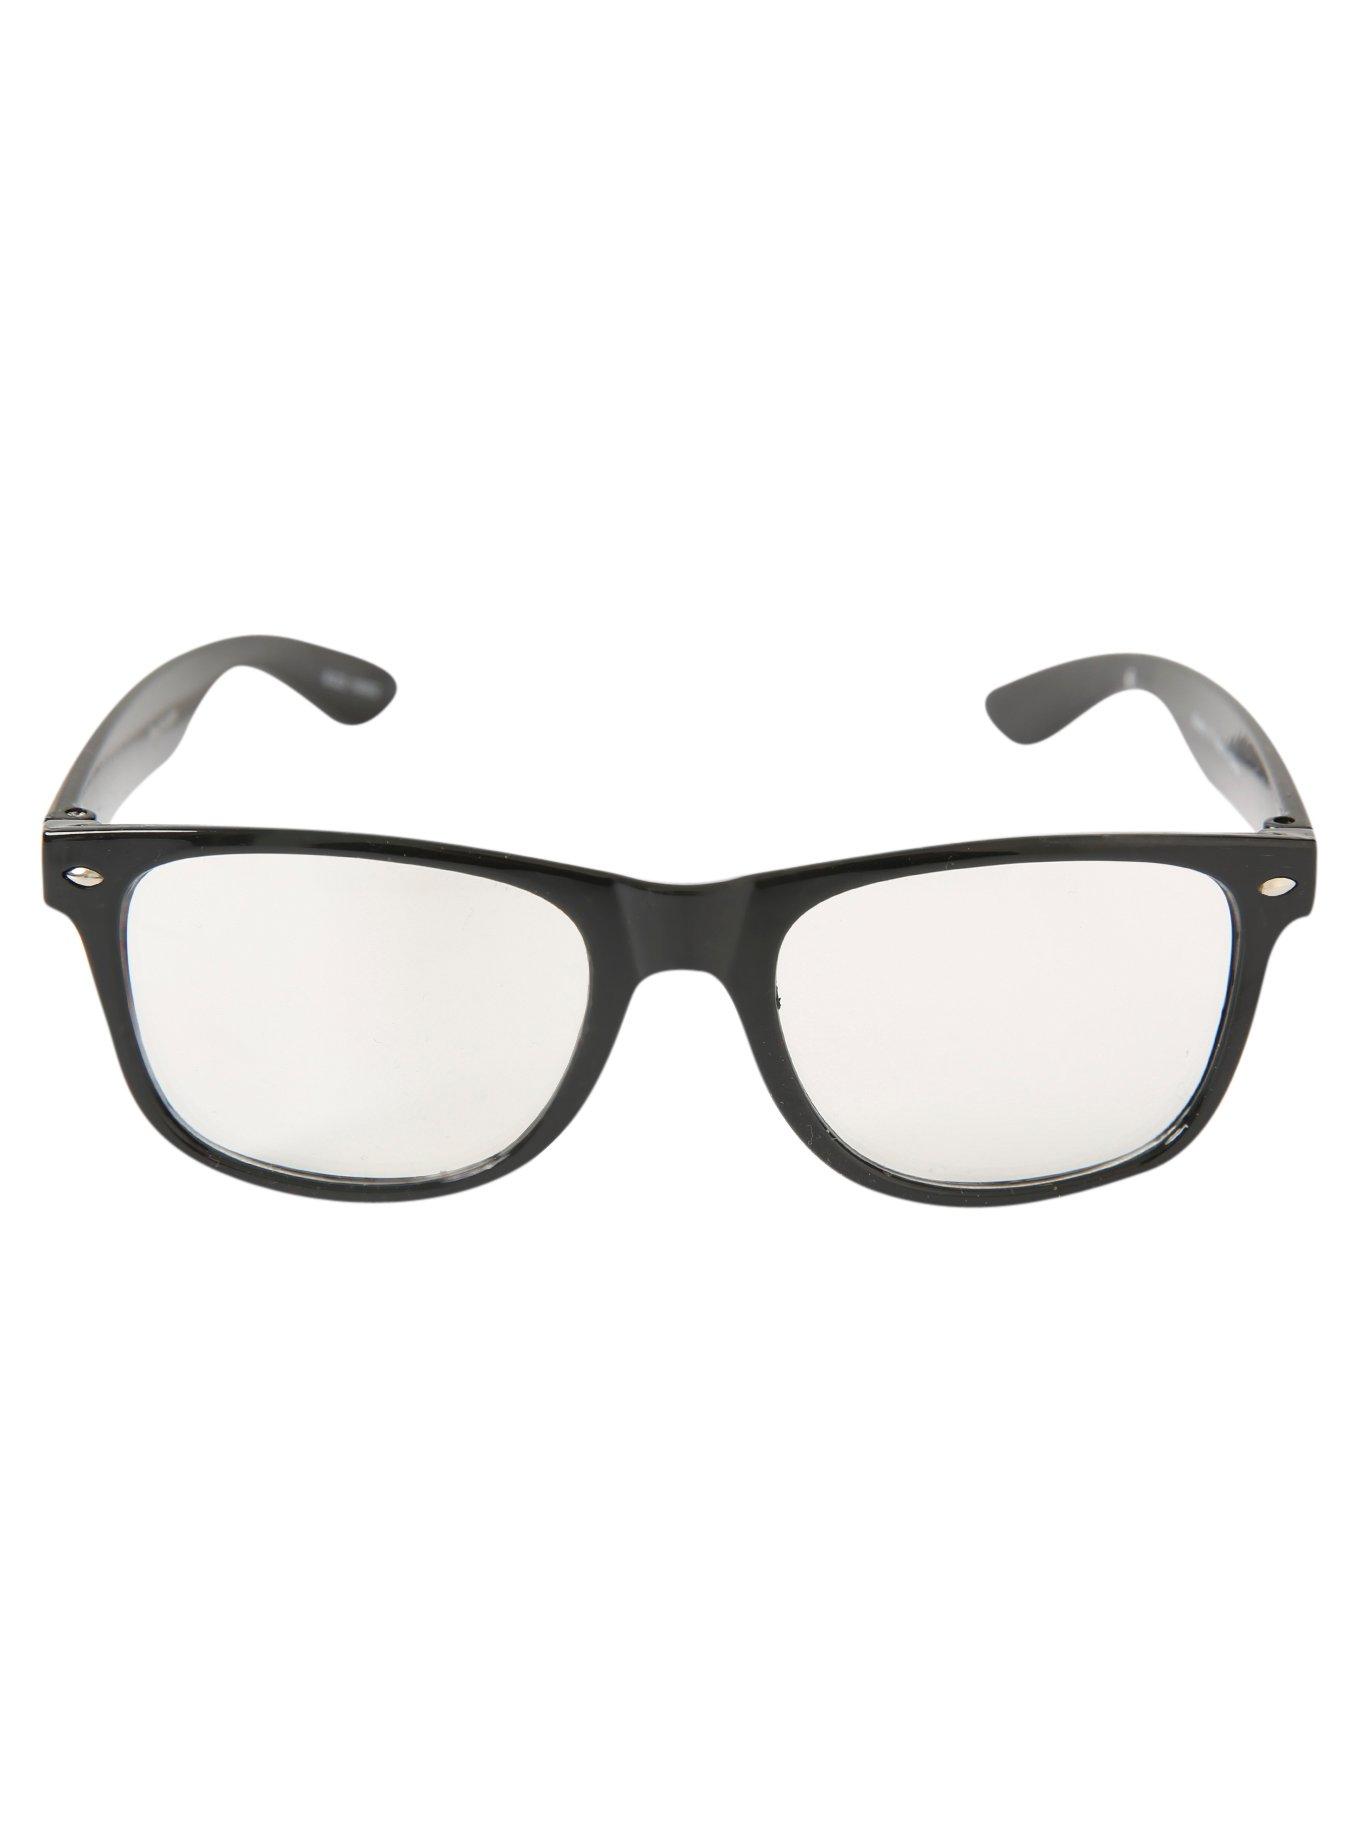 Argyle Skull Retro Clear Lens Glasses, , alternate